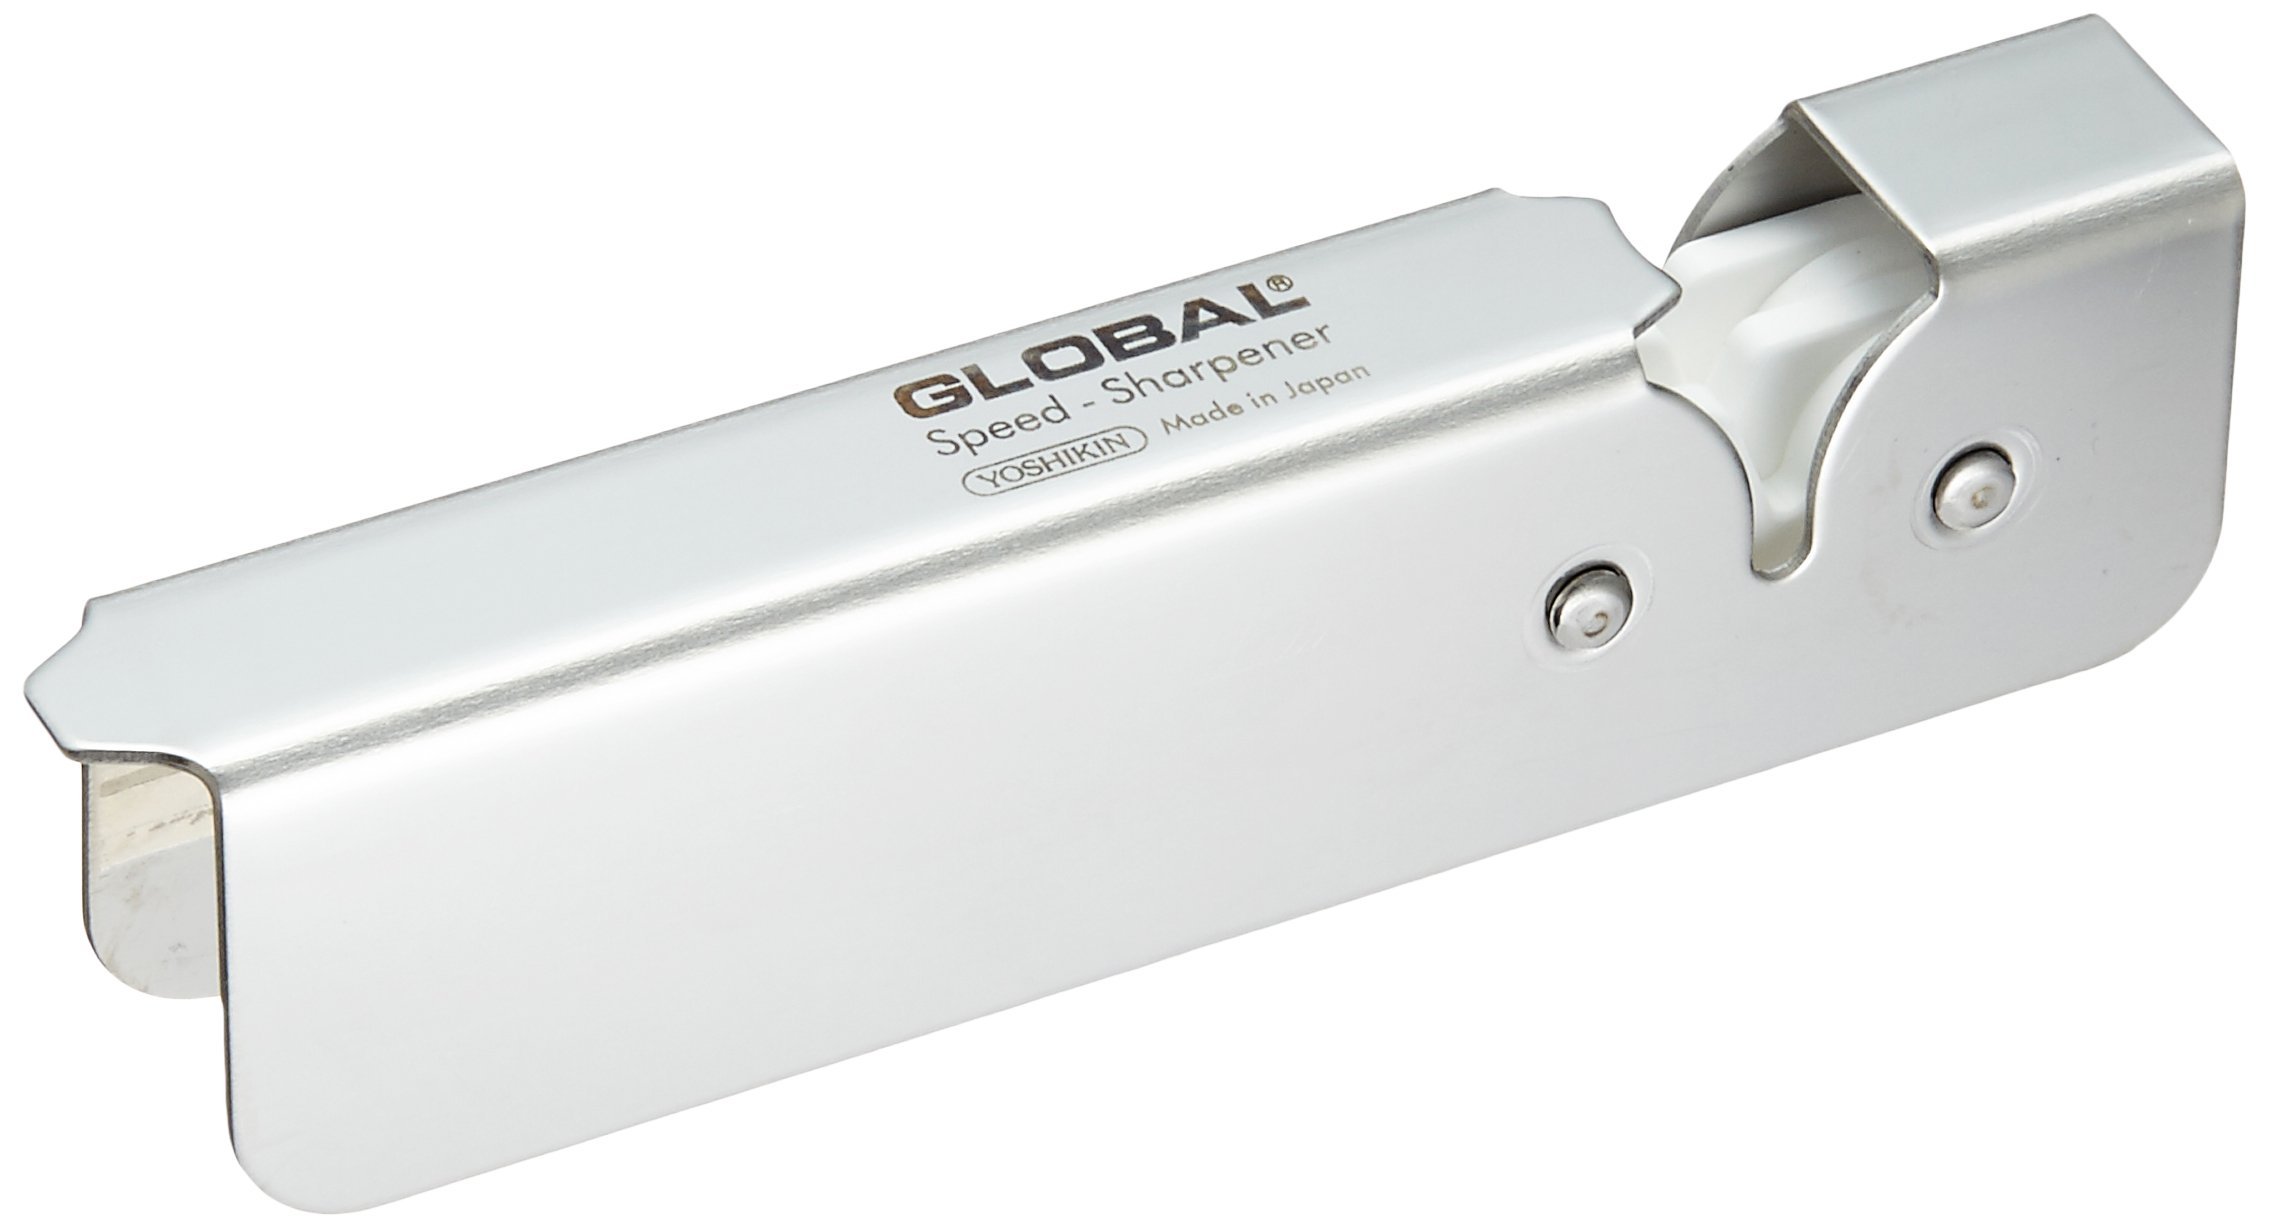 GLOBAL(グローバル) スピードシャープナー GSS-01の商品画像1 